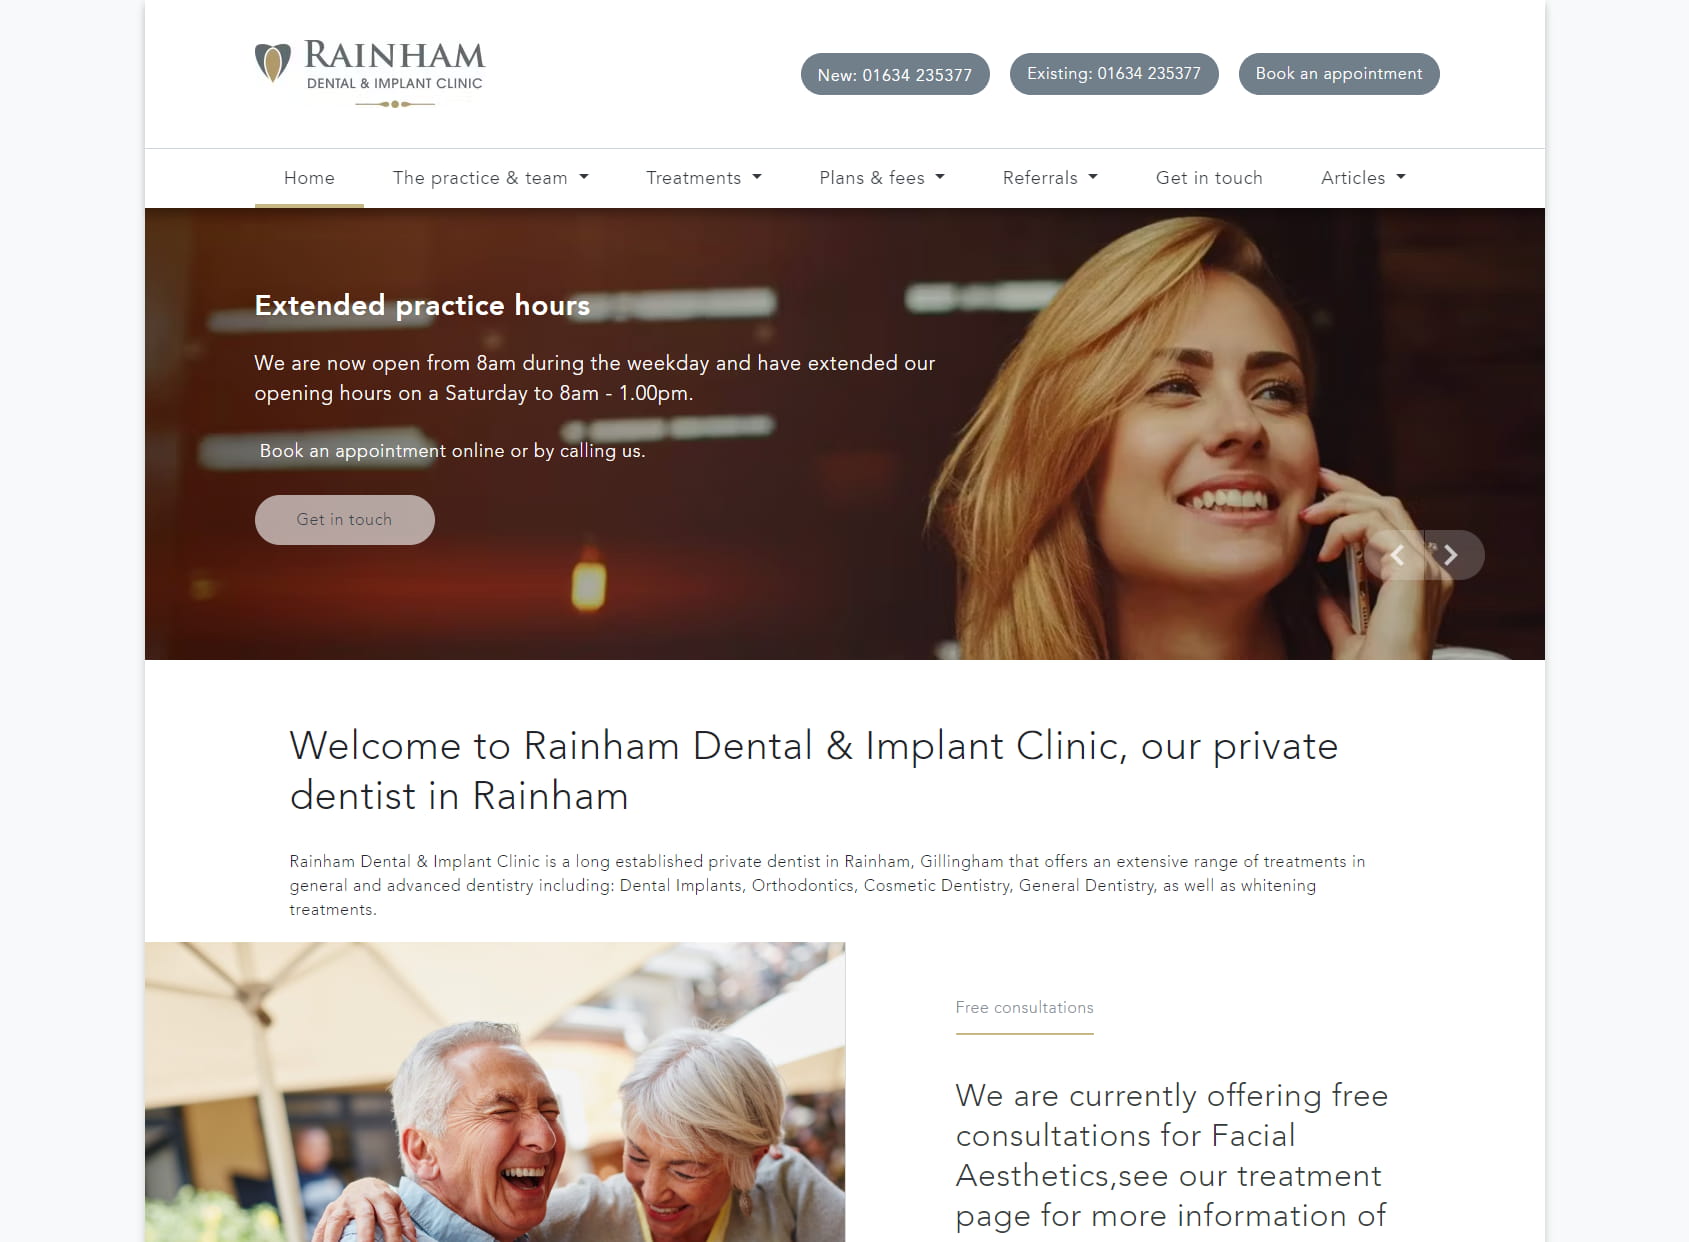 Rainham Dental & Implant Clinic